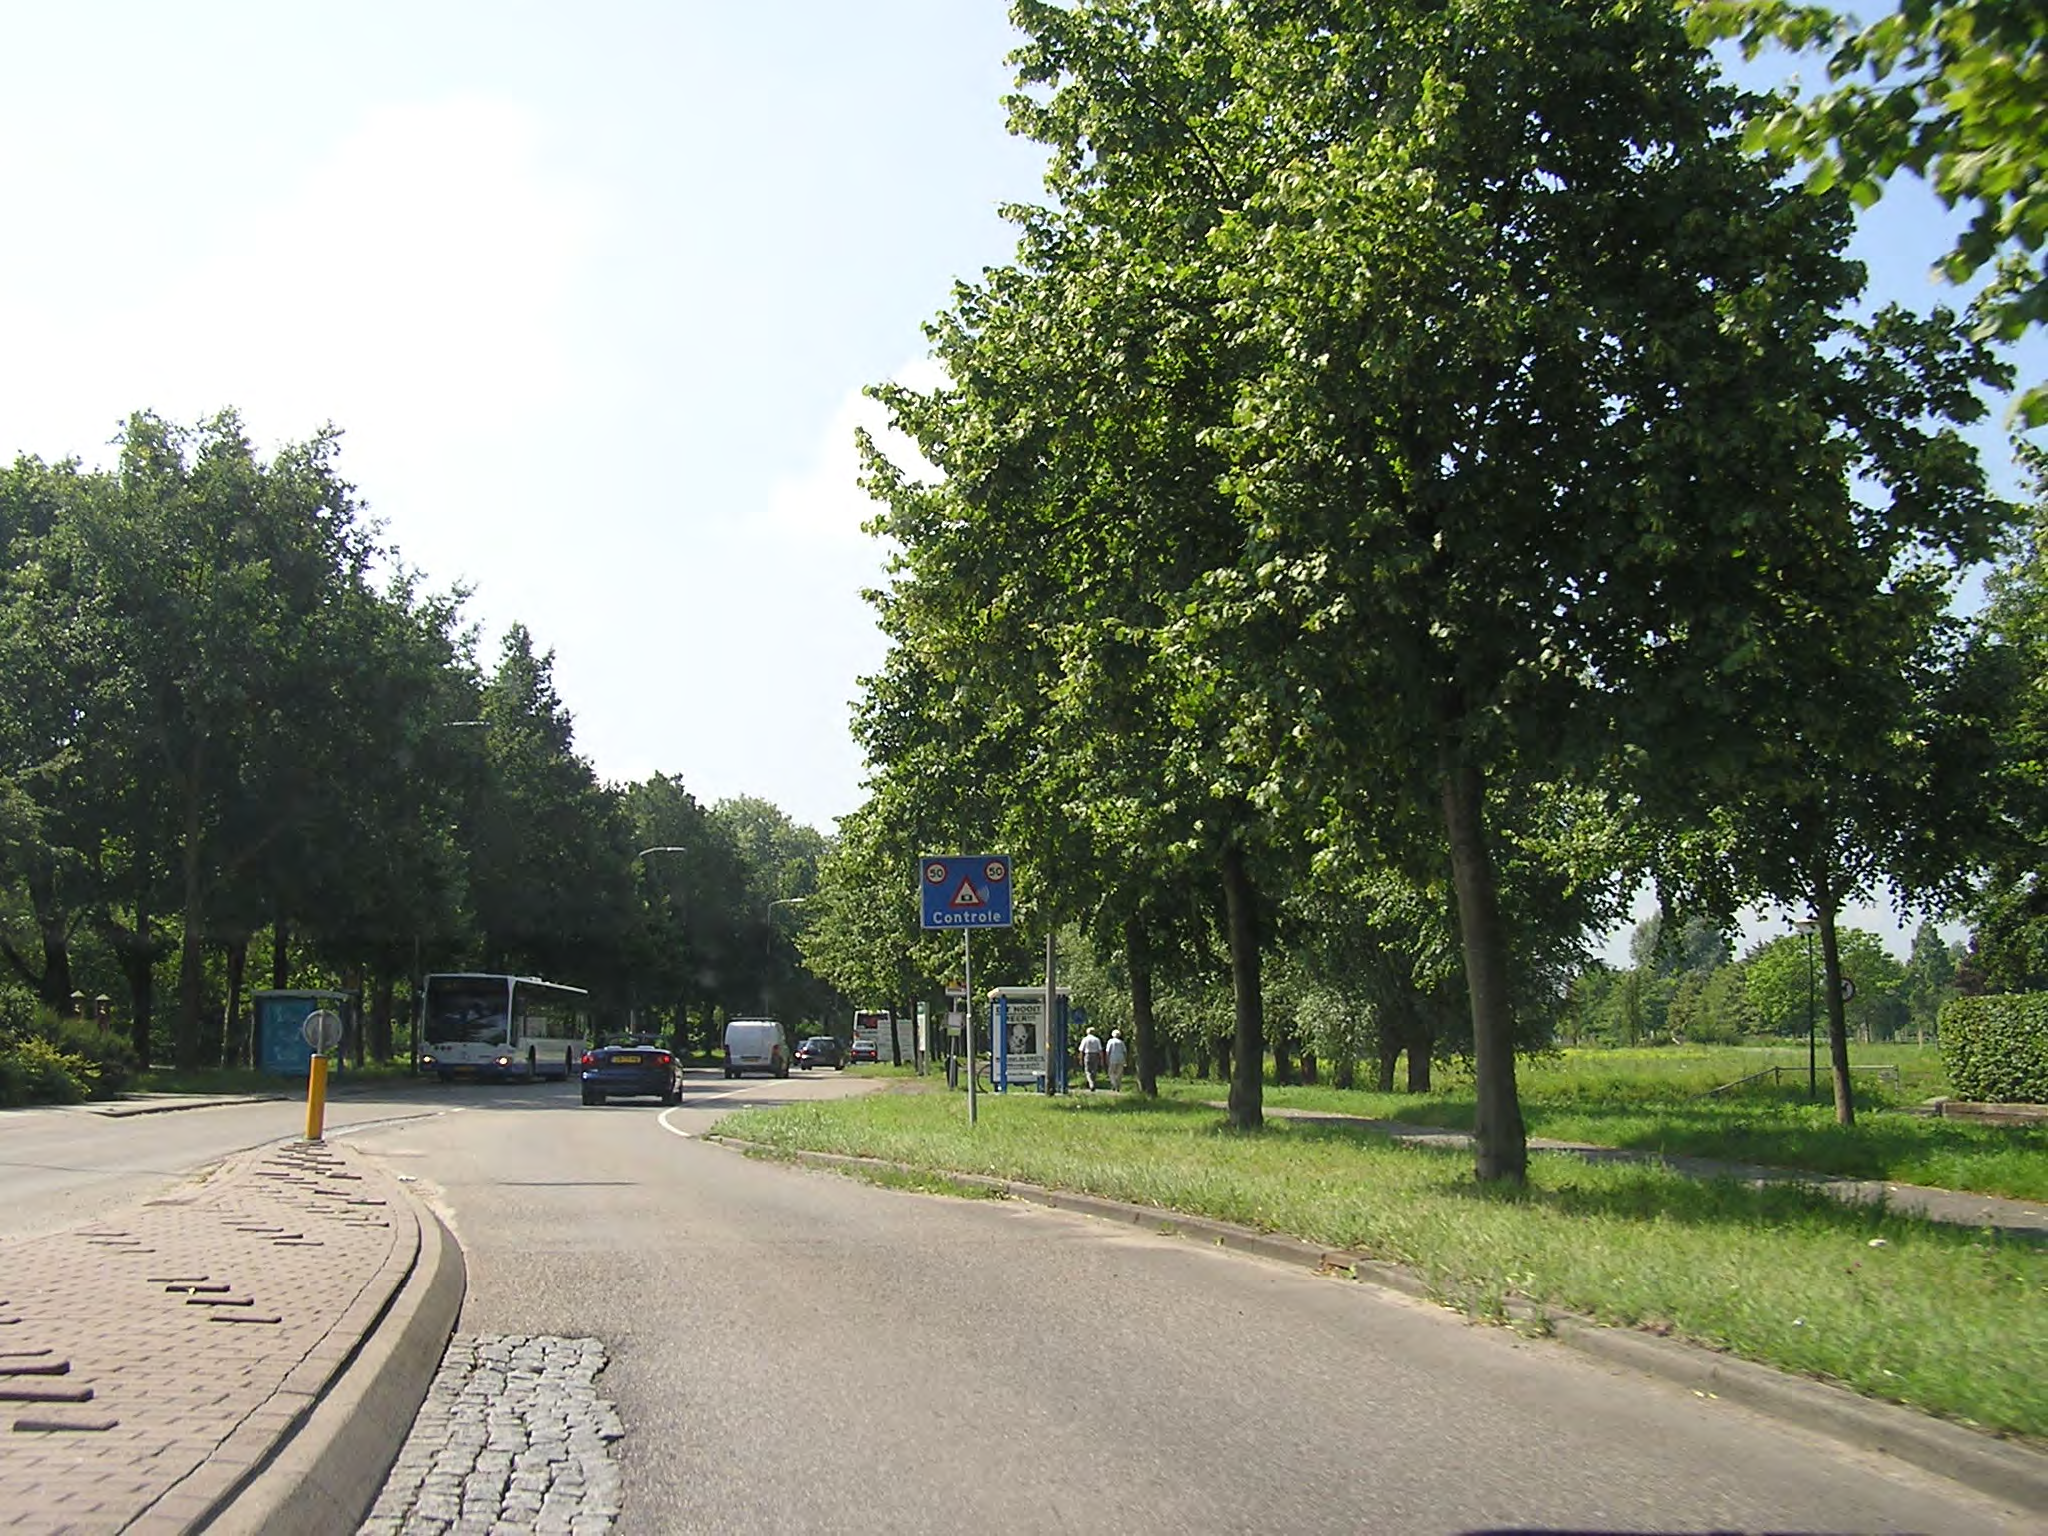 Breukelen, bij Leersum, vlak voor de A12 en tussen Veenendaal en Elst. Maar natuurlijk vond men ook het omgekeerde: de toegestane snelheid te laag voor de feitelijke situatie.